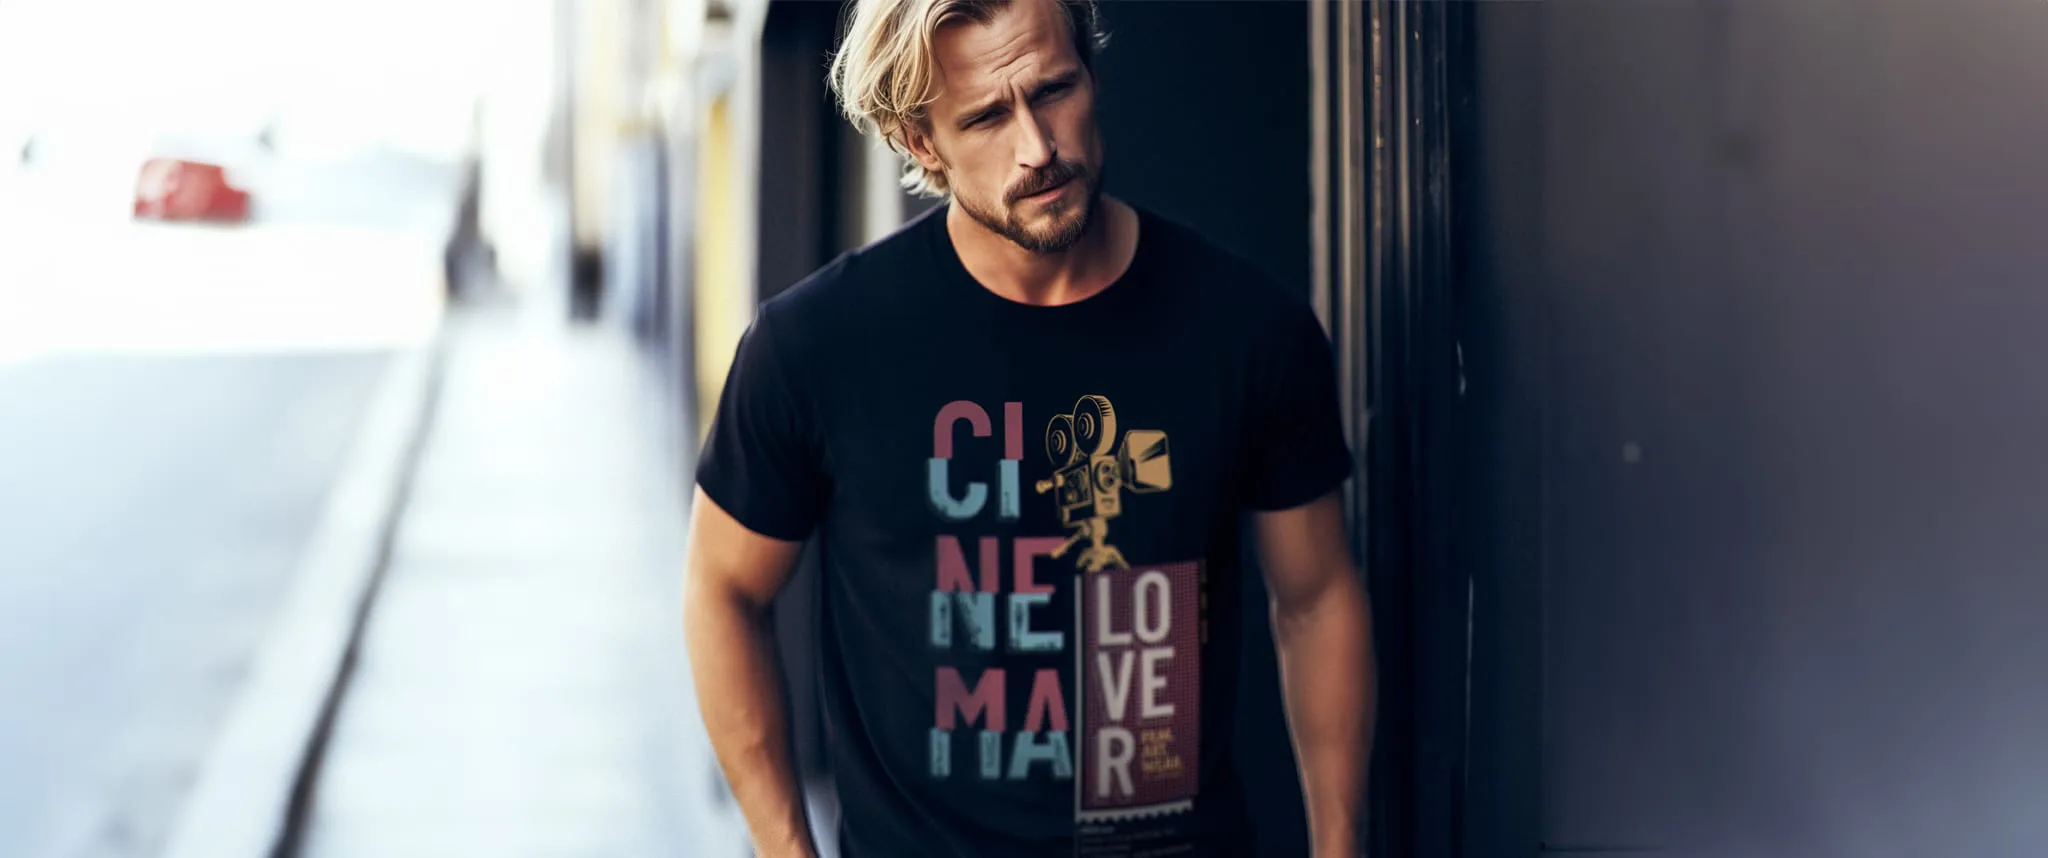 Greg trägt Cinema Lover T-Shirt Slider Abbildung